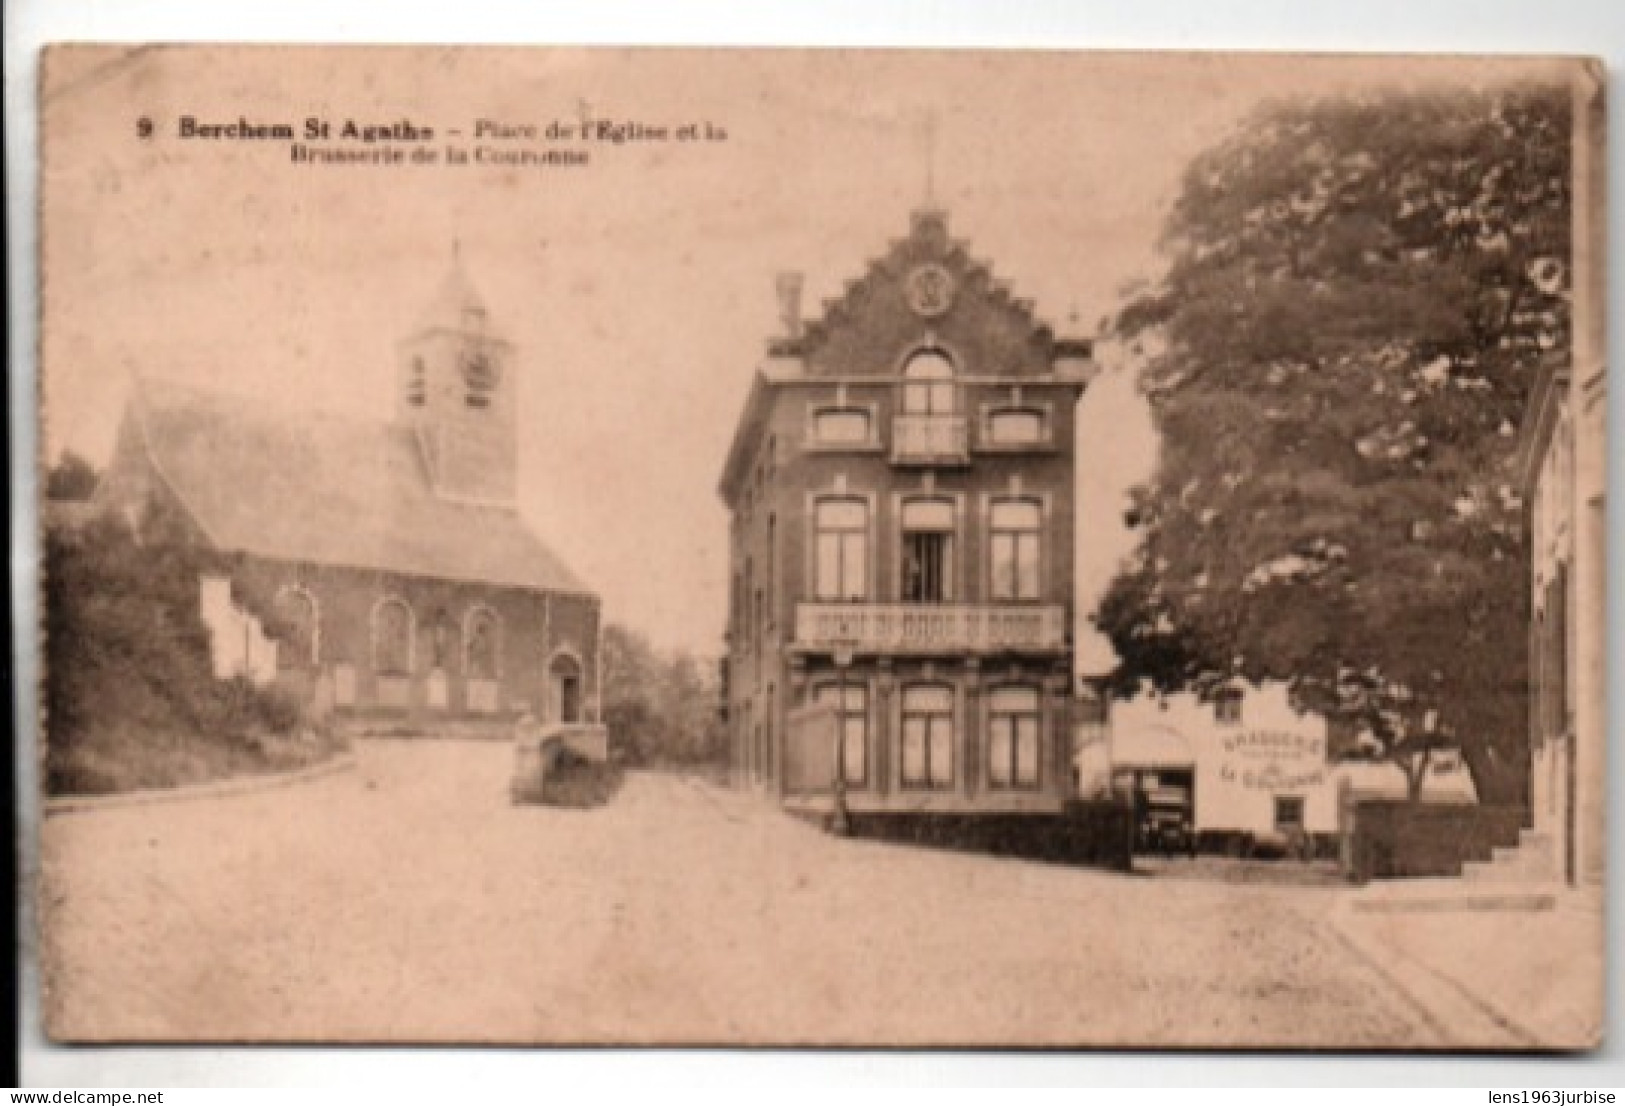 Berchem St Agathe - Place De L' Eglise Et La Brasserie De La Couronne - Cafés, Hôtels, Restaurants